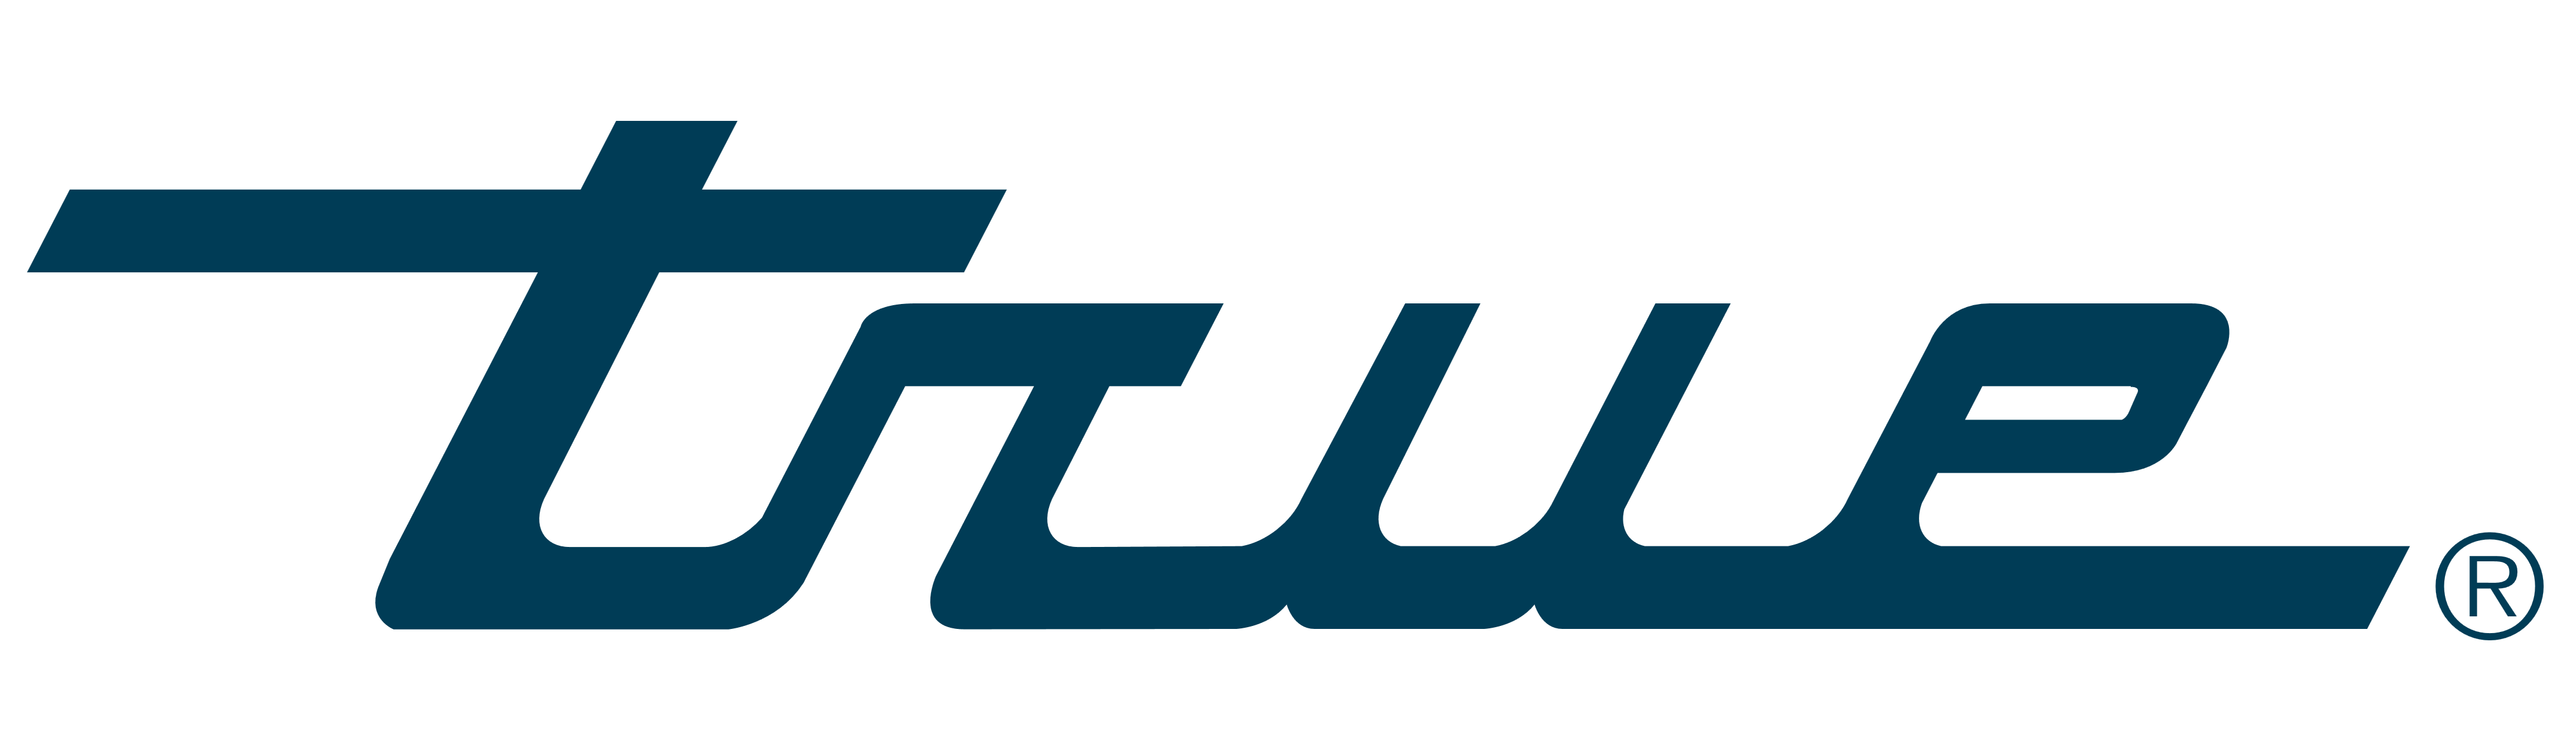 True_Manufacturing_logo_logotype